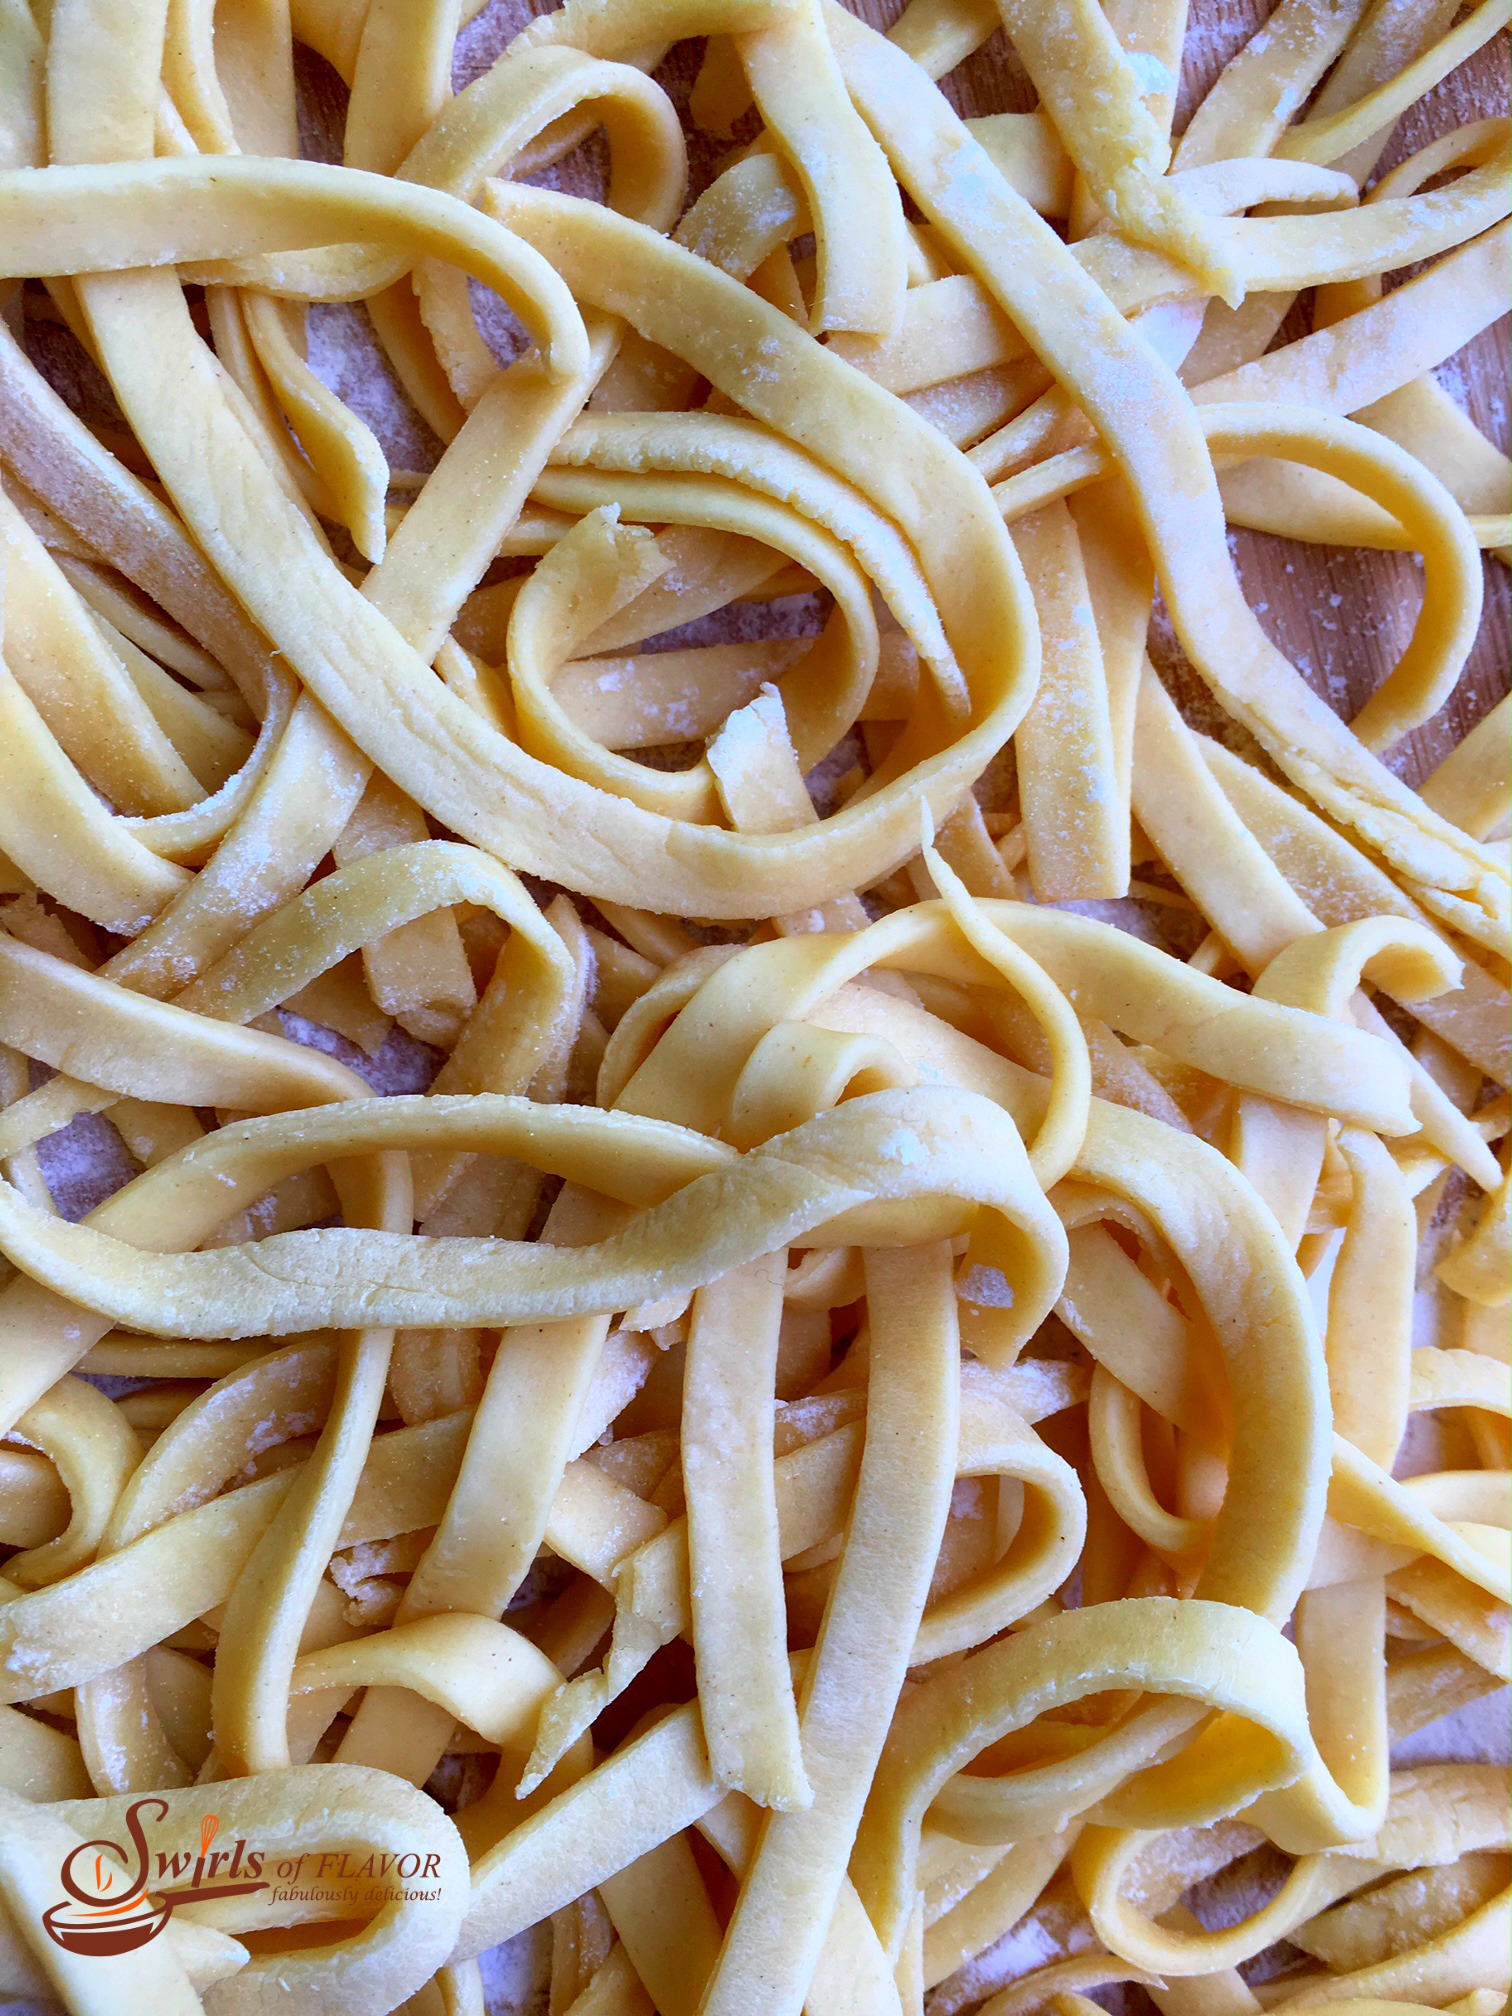 Homemade pasta up close